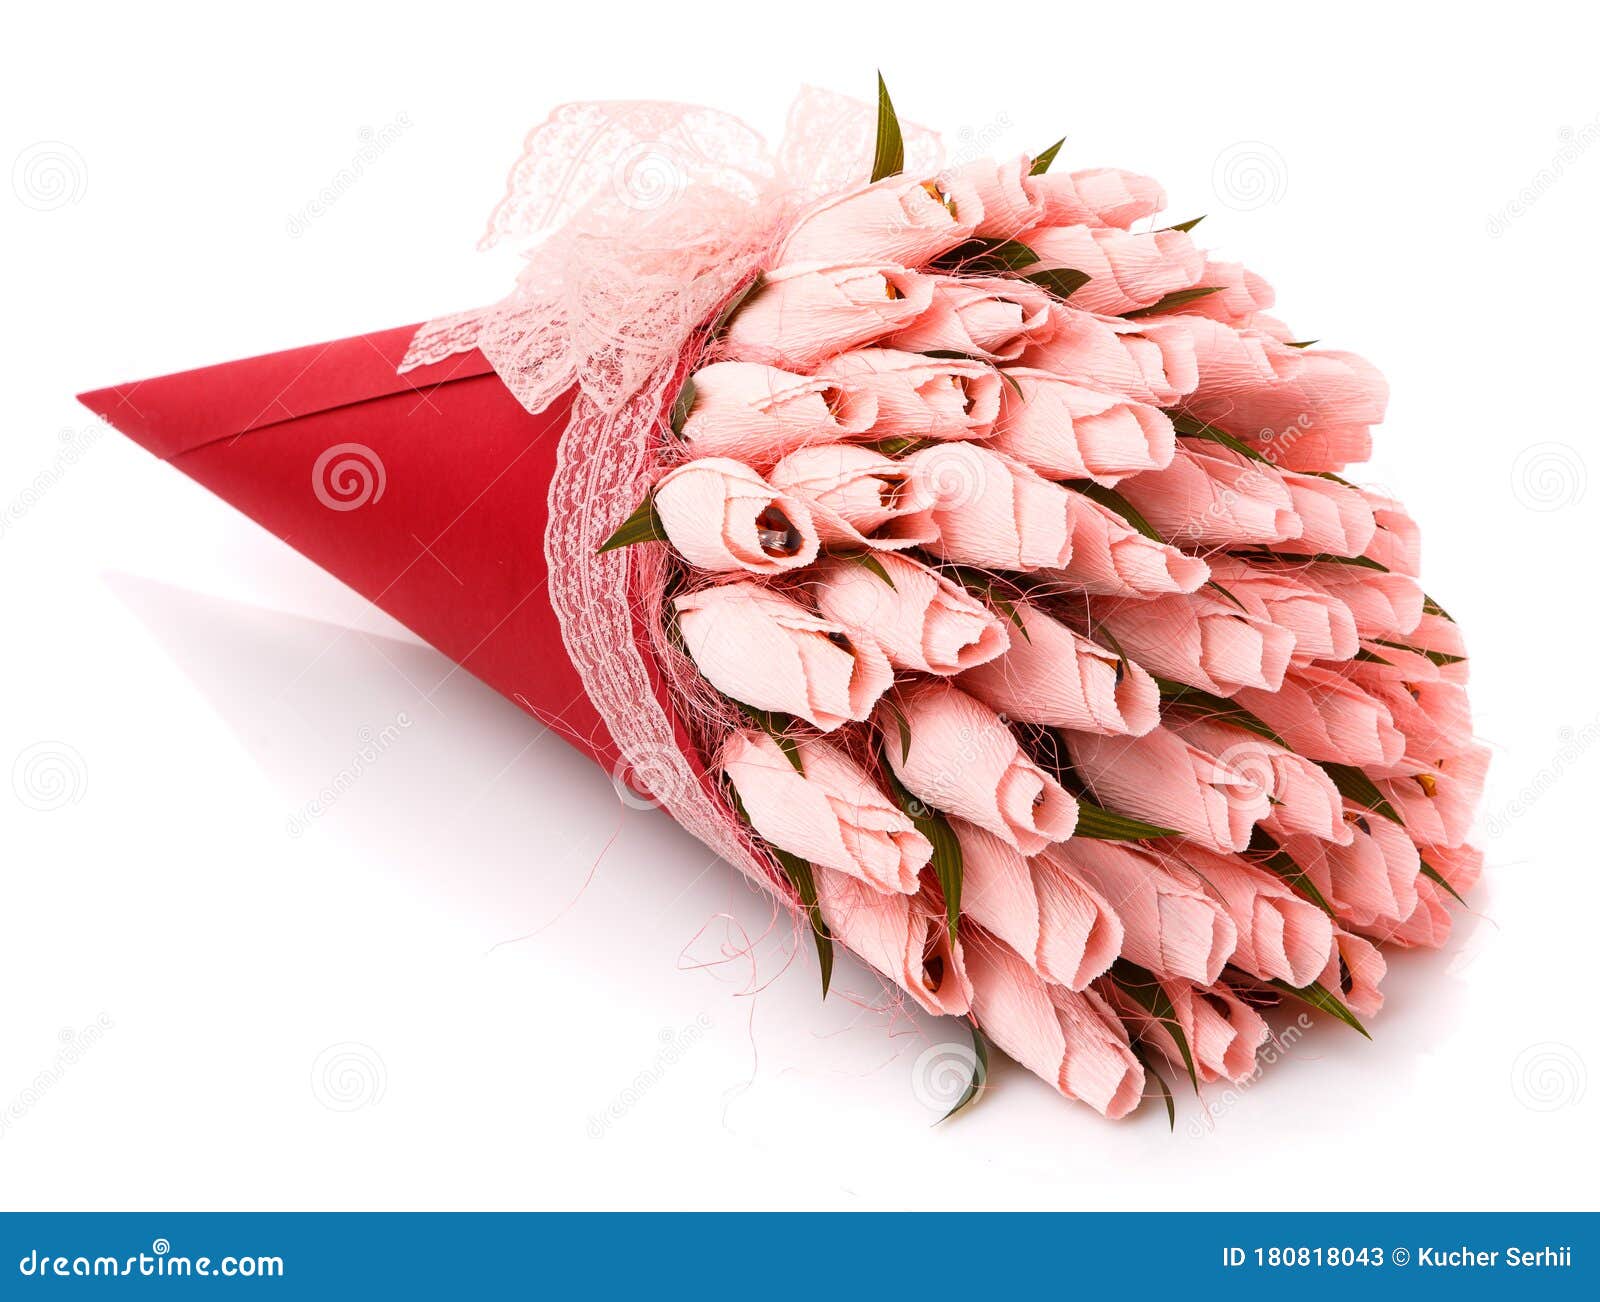 Букет на обед: корзинка сладких тюльпанов своими руками